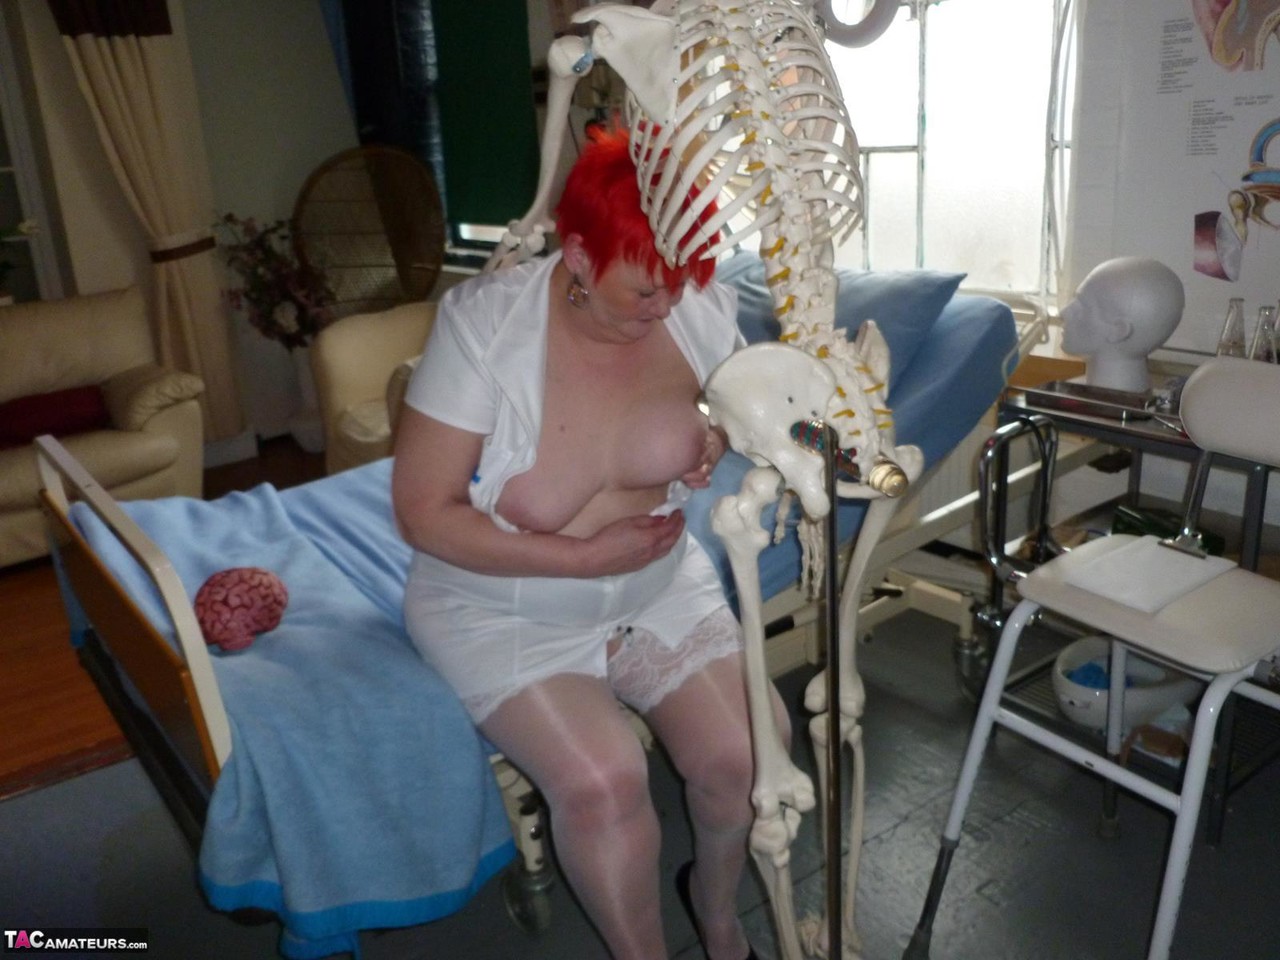 Older redhead nurse Valgasmic Exposed gets banged by a dildo wielding skeleton 포르노 사진 #425285471 | TAC Amateurs Pics, Valgasmic Exposed, Cosplay, 모바일 포르노